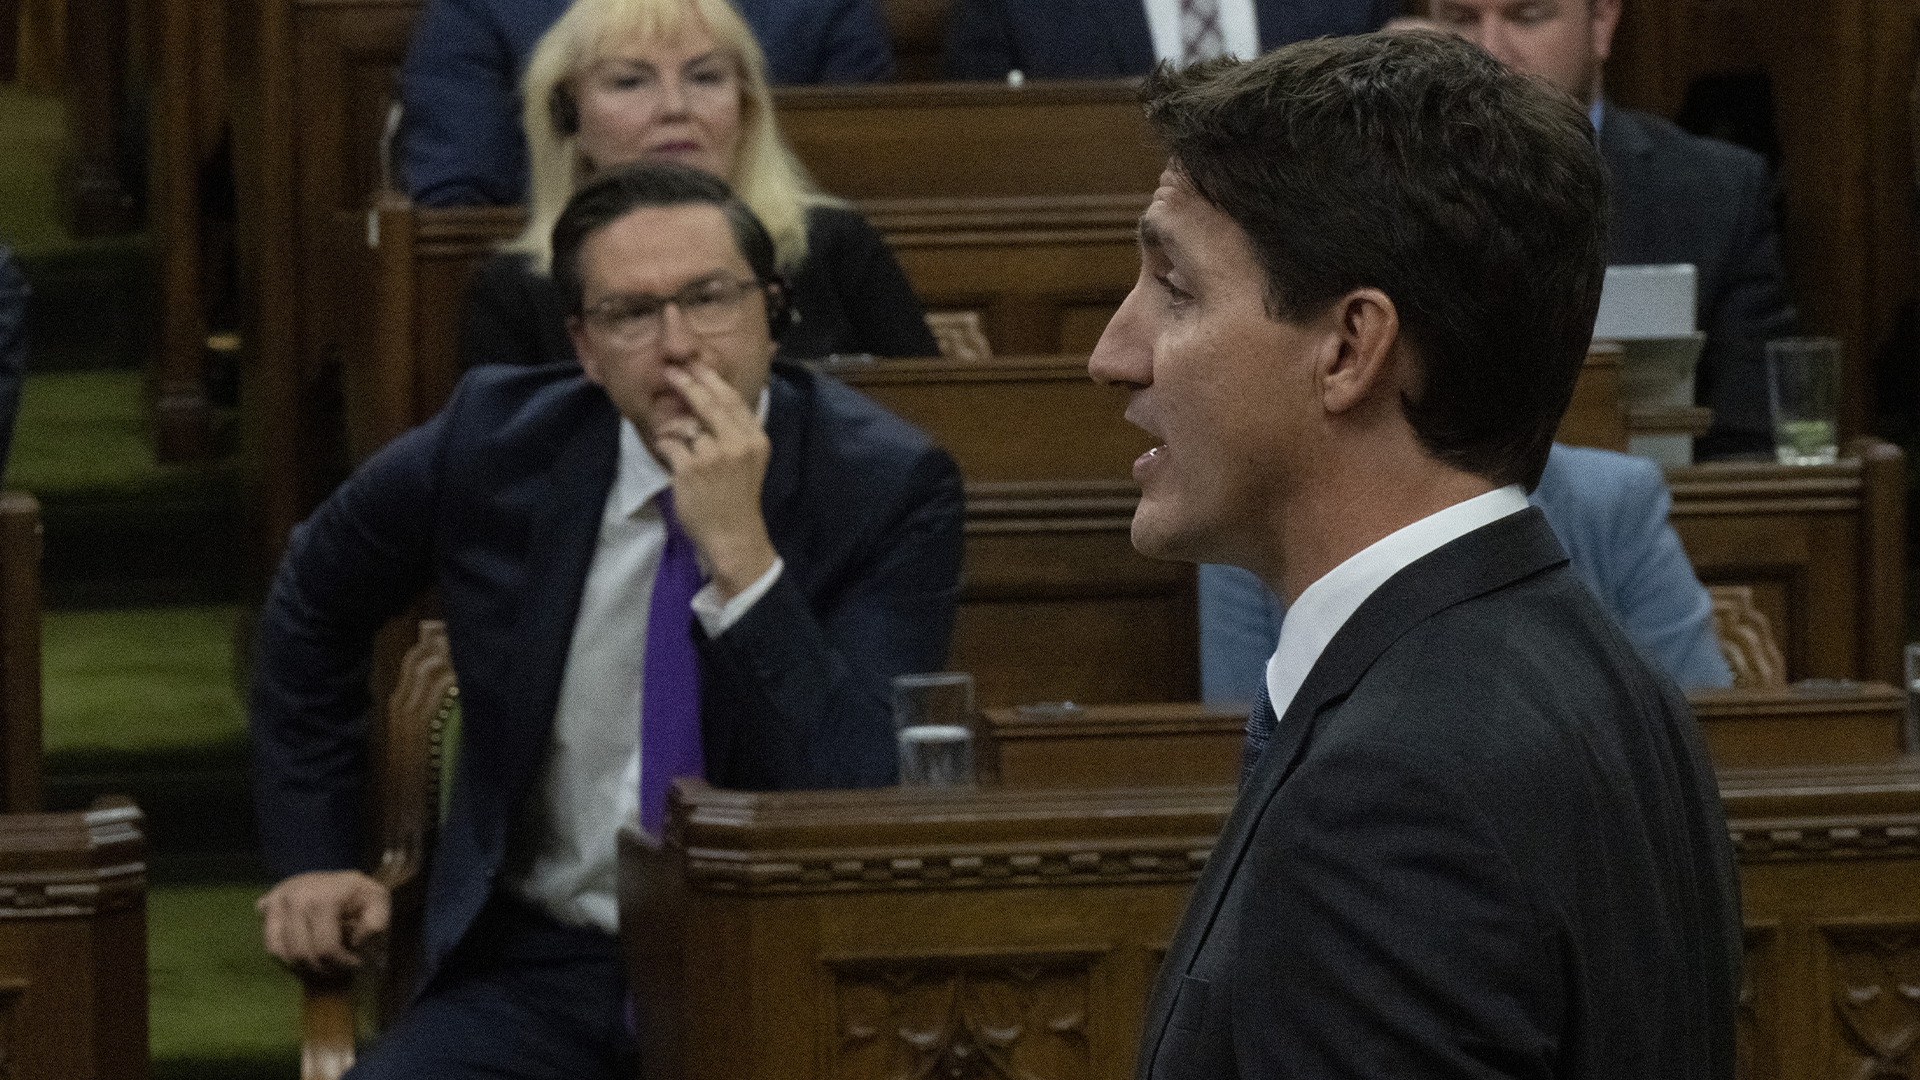 Il s'agissait d'un premier échange entre le premier ministre,Justin Trudeau, de retour au pays après des visites à Londres et à New York, et le chef conservateur Pierre Poilievre, nouvellement élu à la tête de son parti.